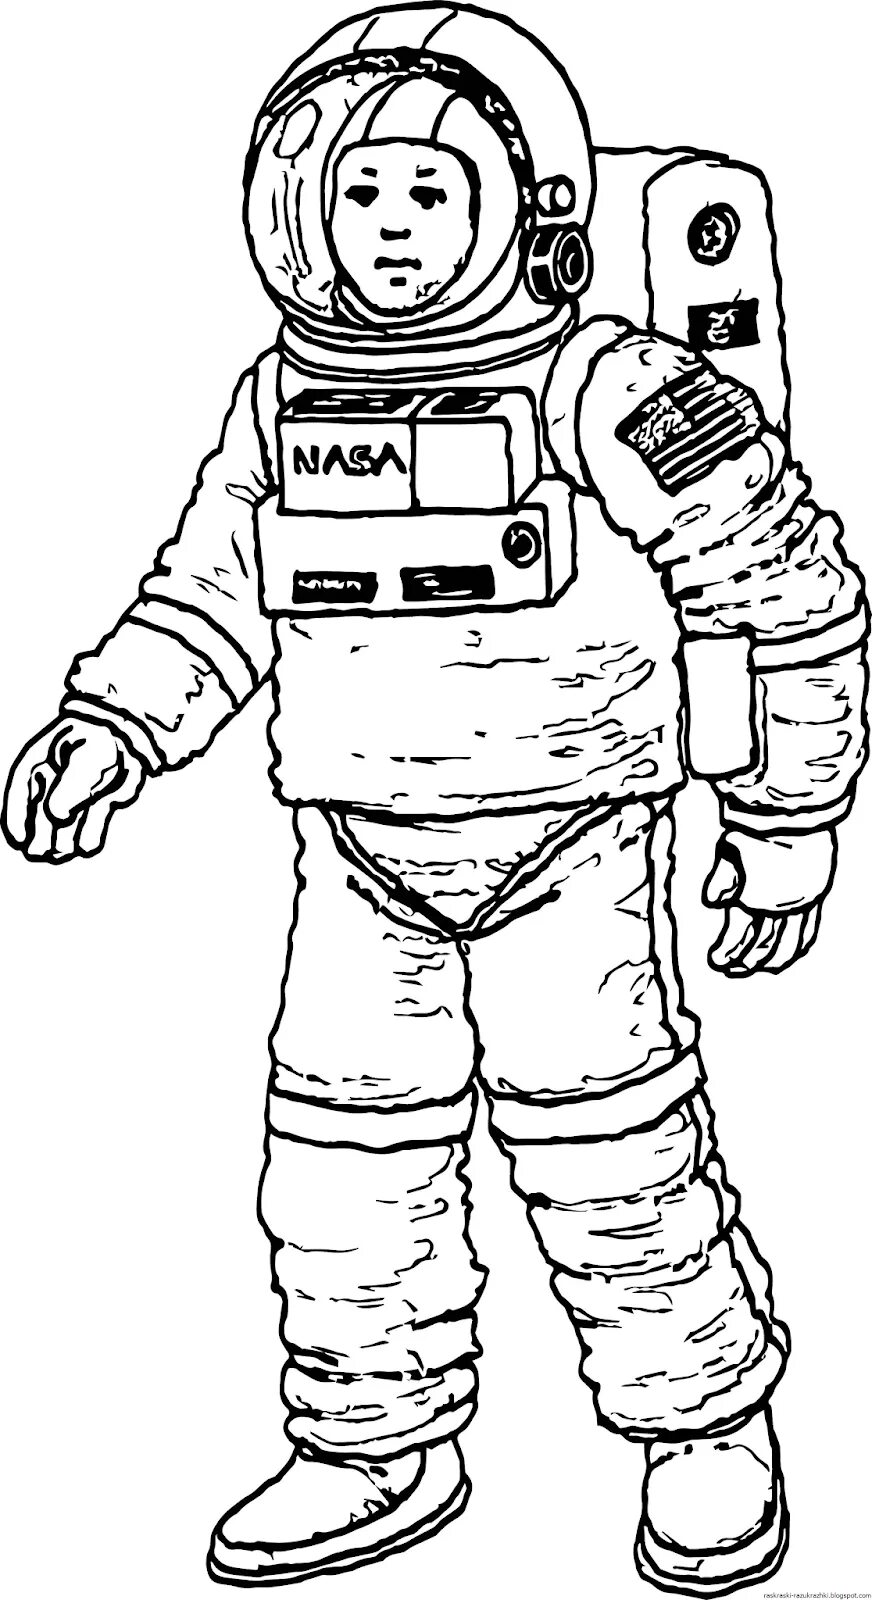 Космонавт контур. Космонавт раскраска для детей. Раскраска про космос и Космонавтов для детей. Космонавт рисунок. Рисунок Космонавта в скафандре для детей.